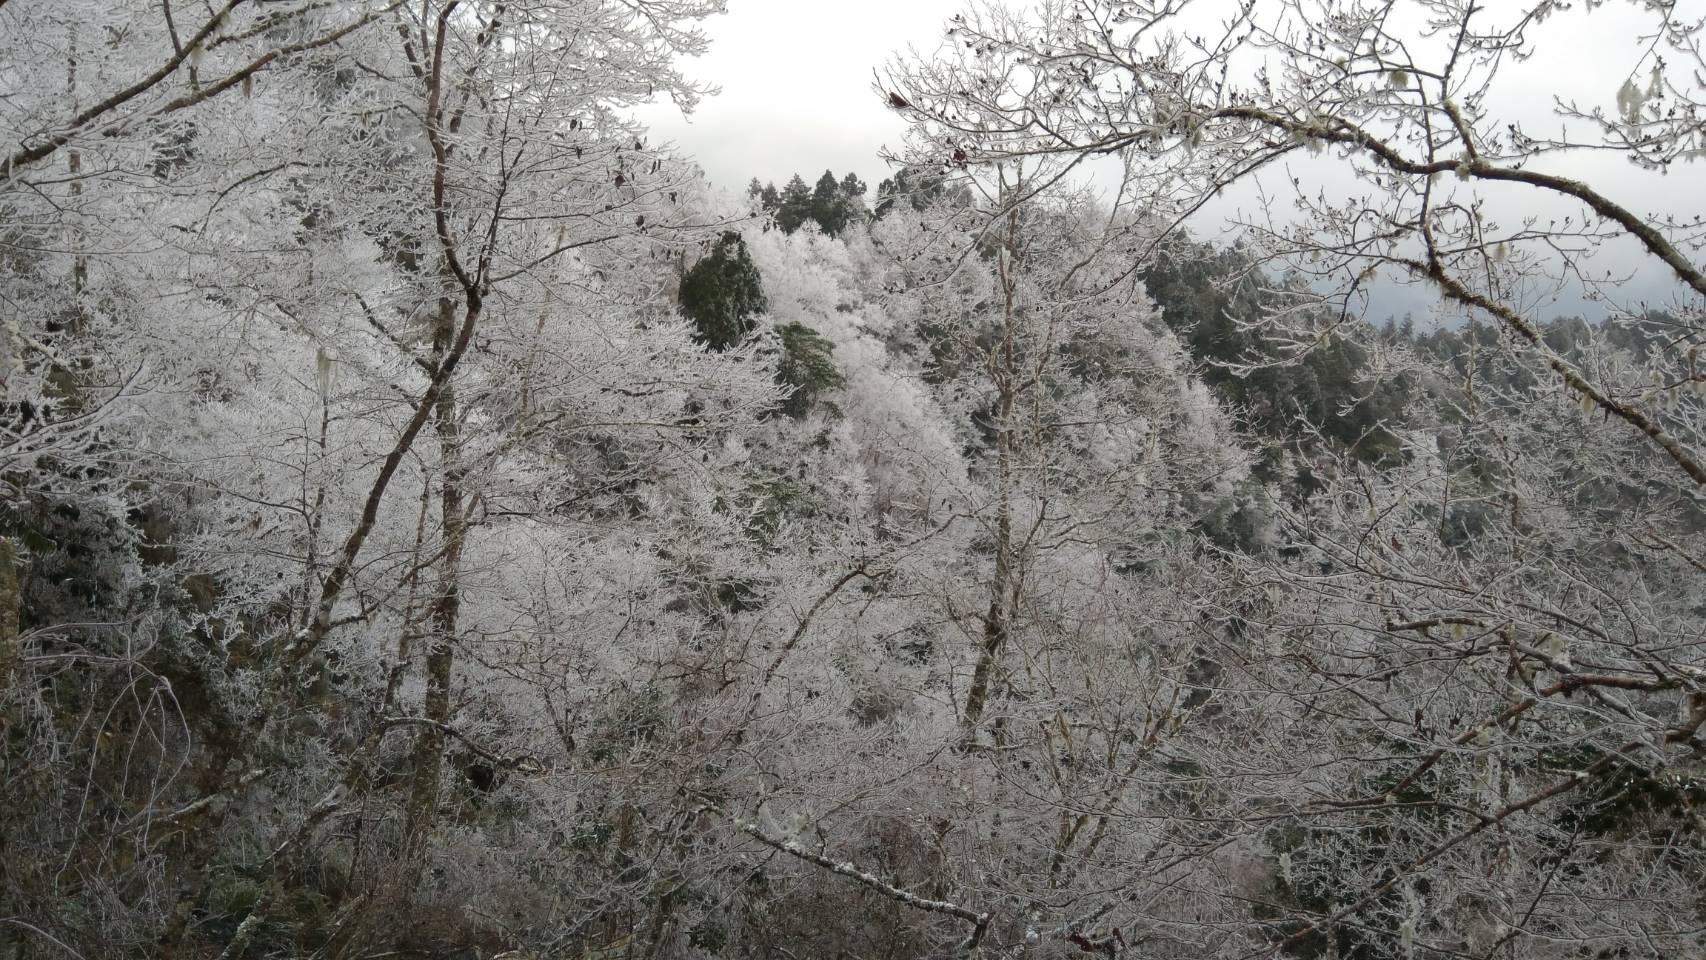 20180112-6 下雪景色